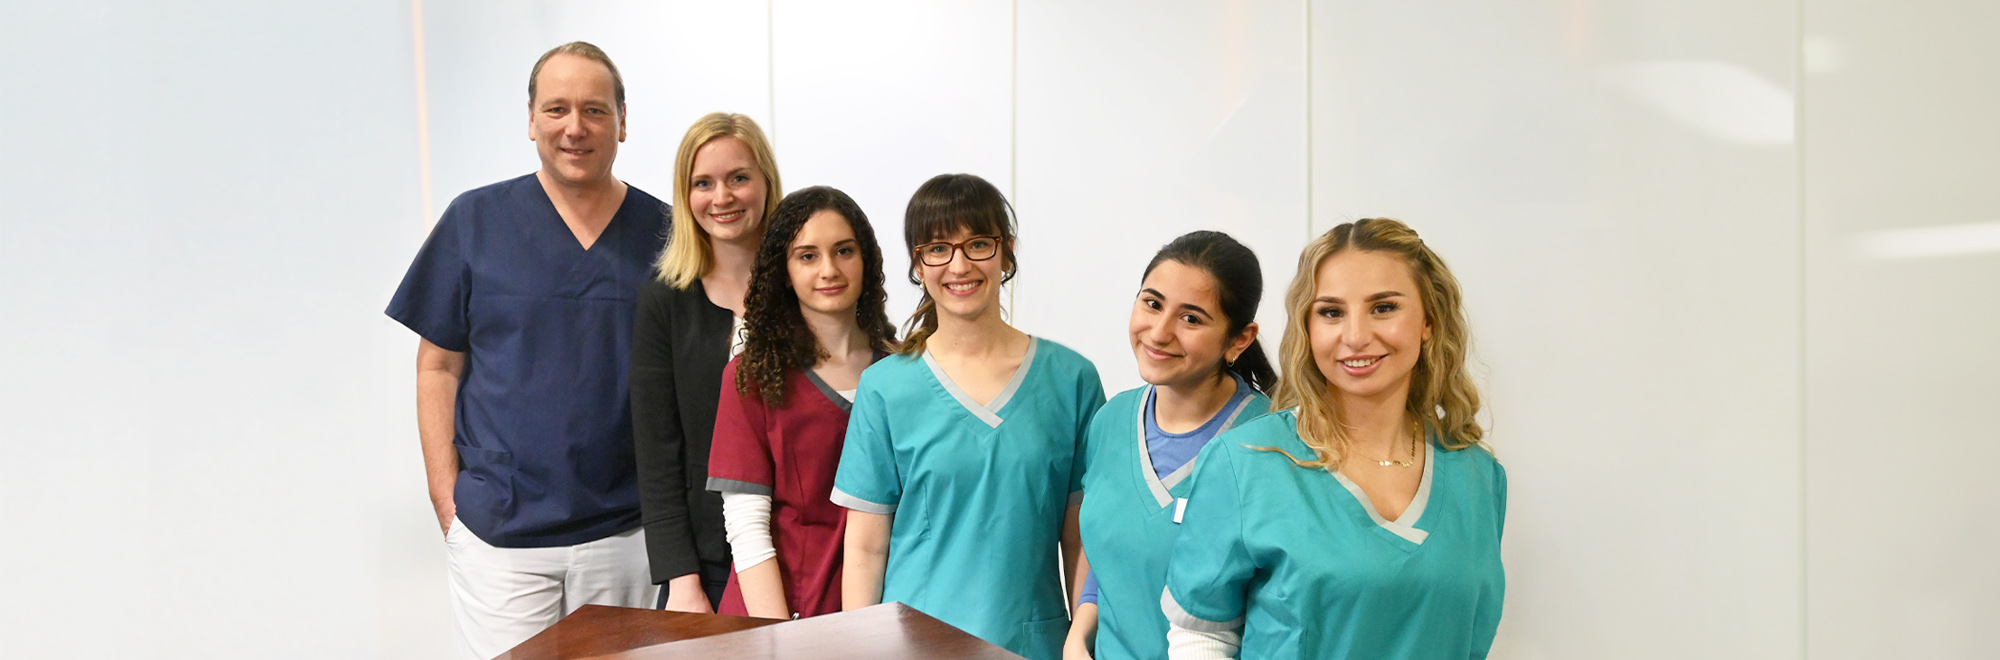 Das Team der Praxis von Dr. Markus Walter – Ihre Zahnarztpraxis in Hannover Mitte